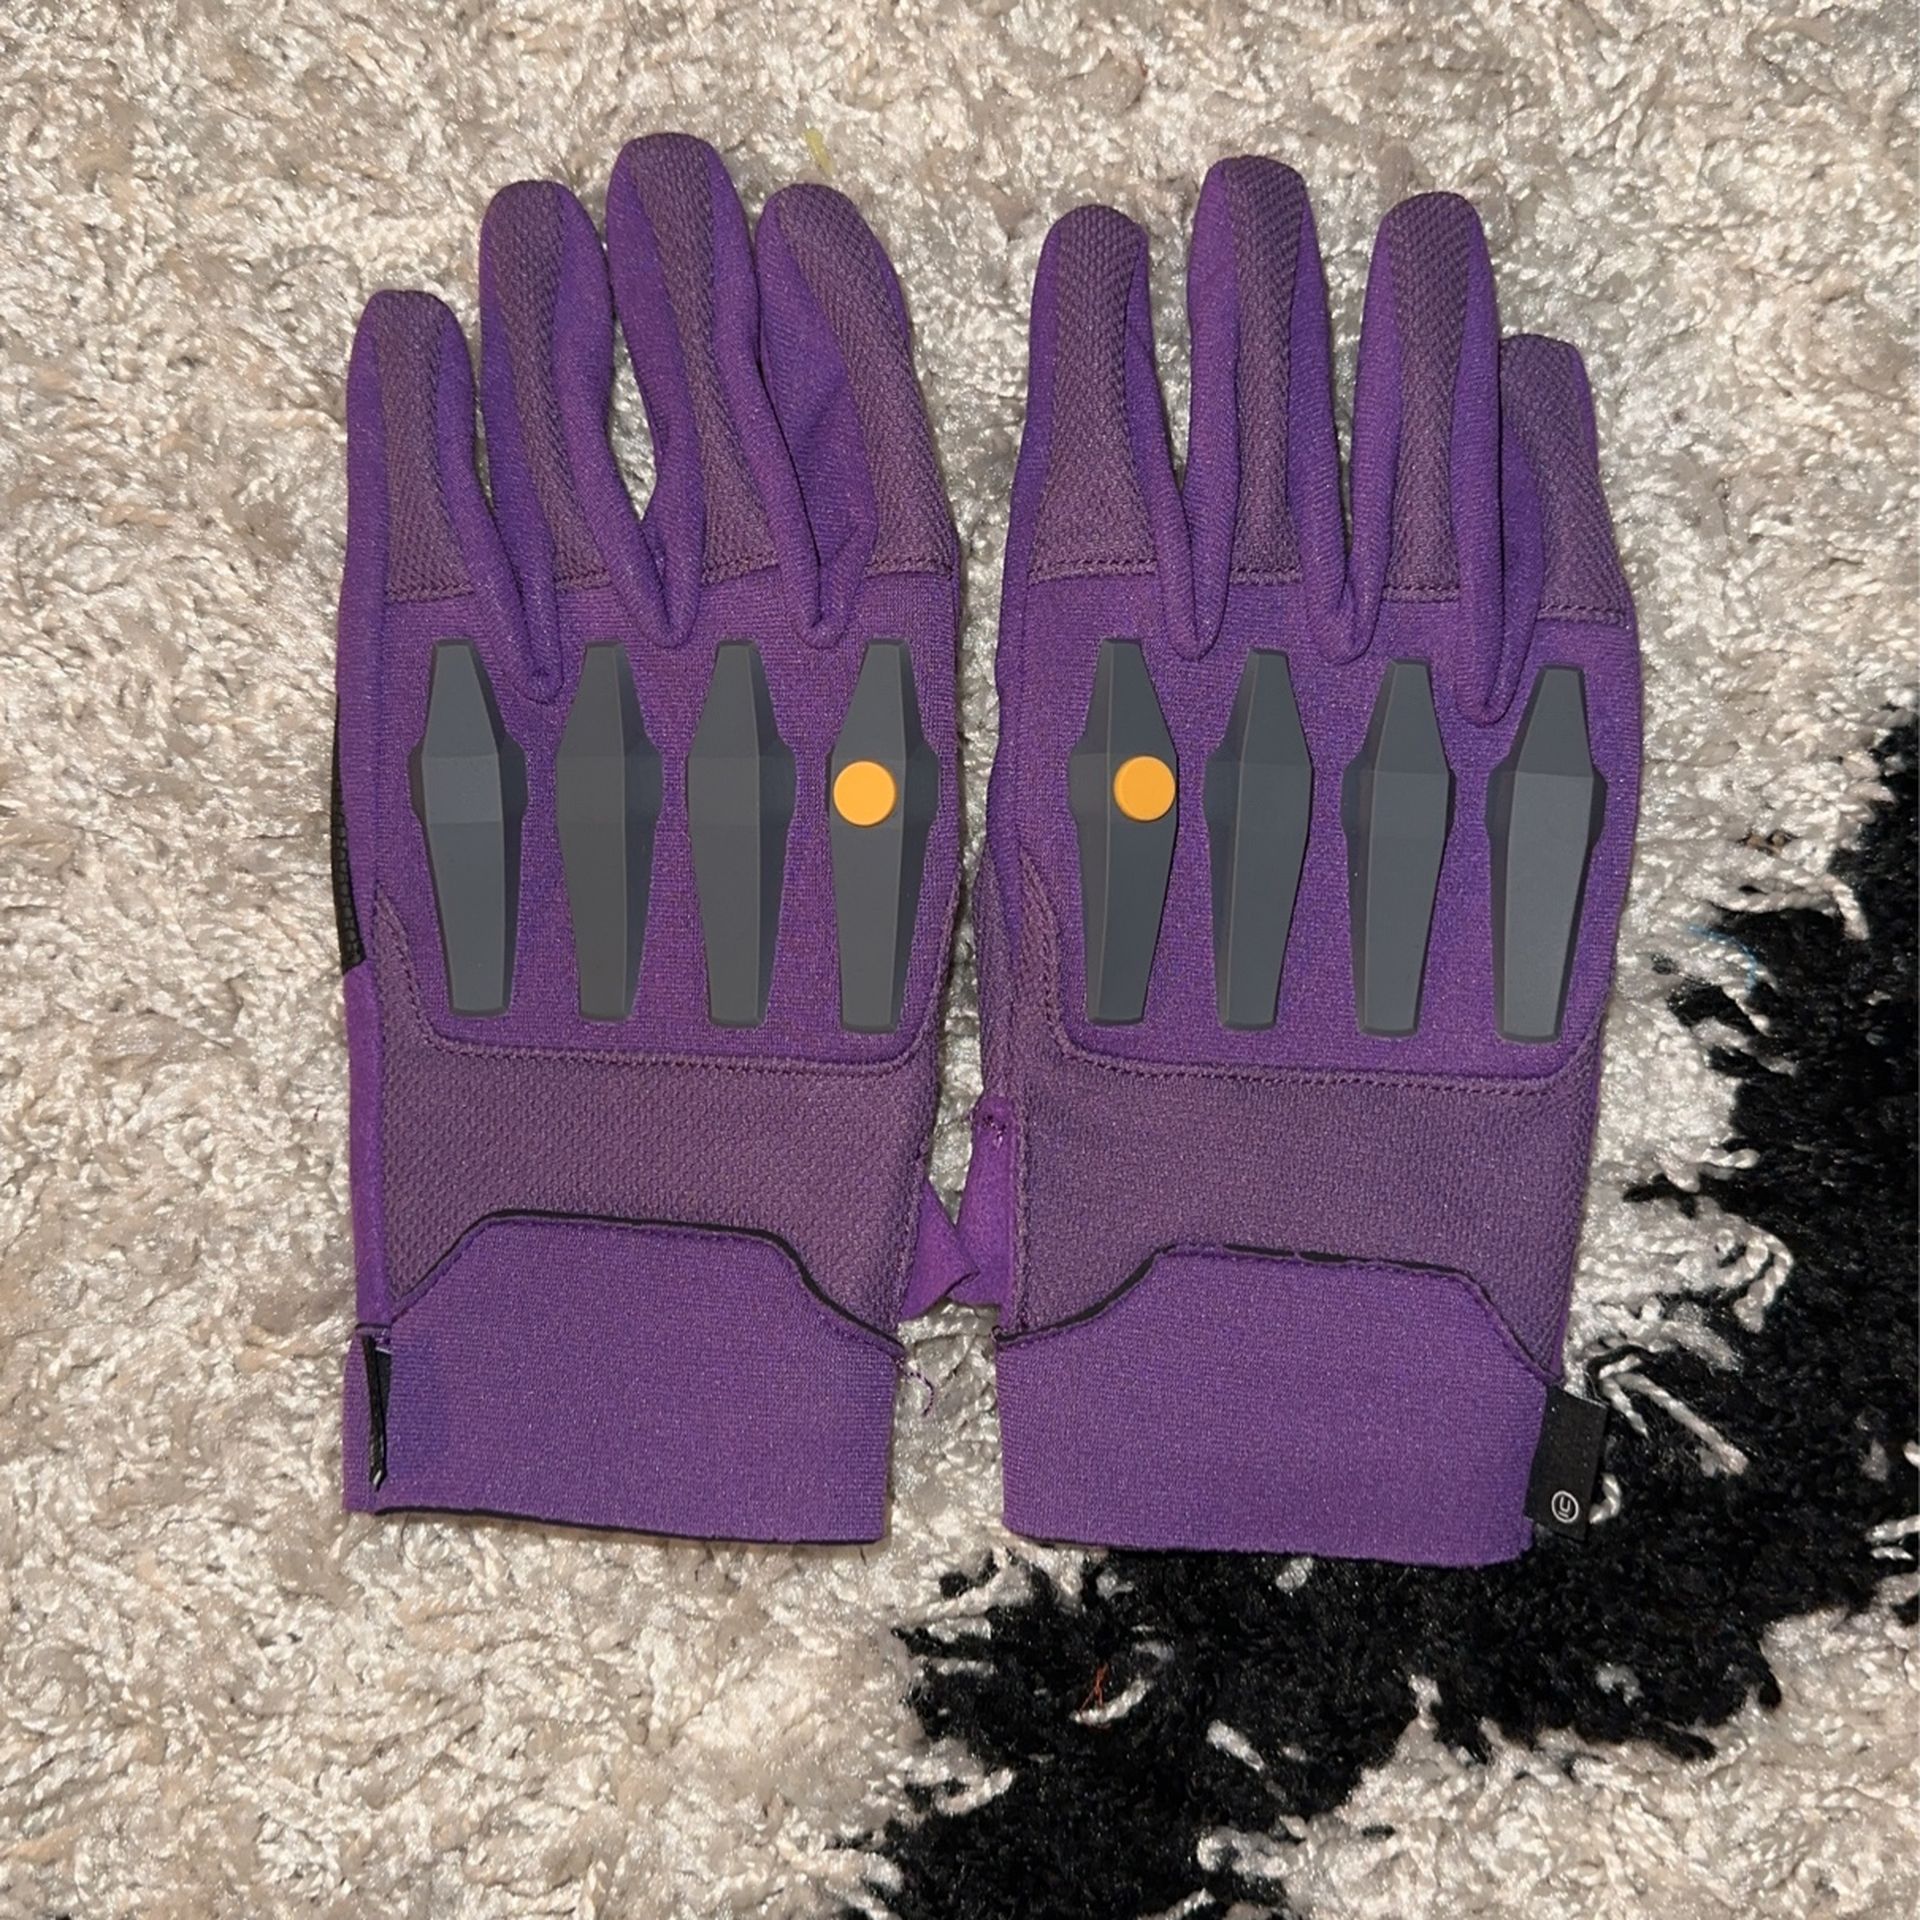 Undercover Neon Genesis Evangelion Gloves